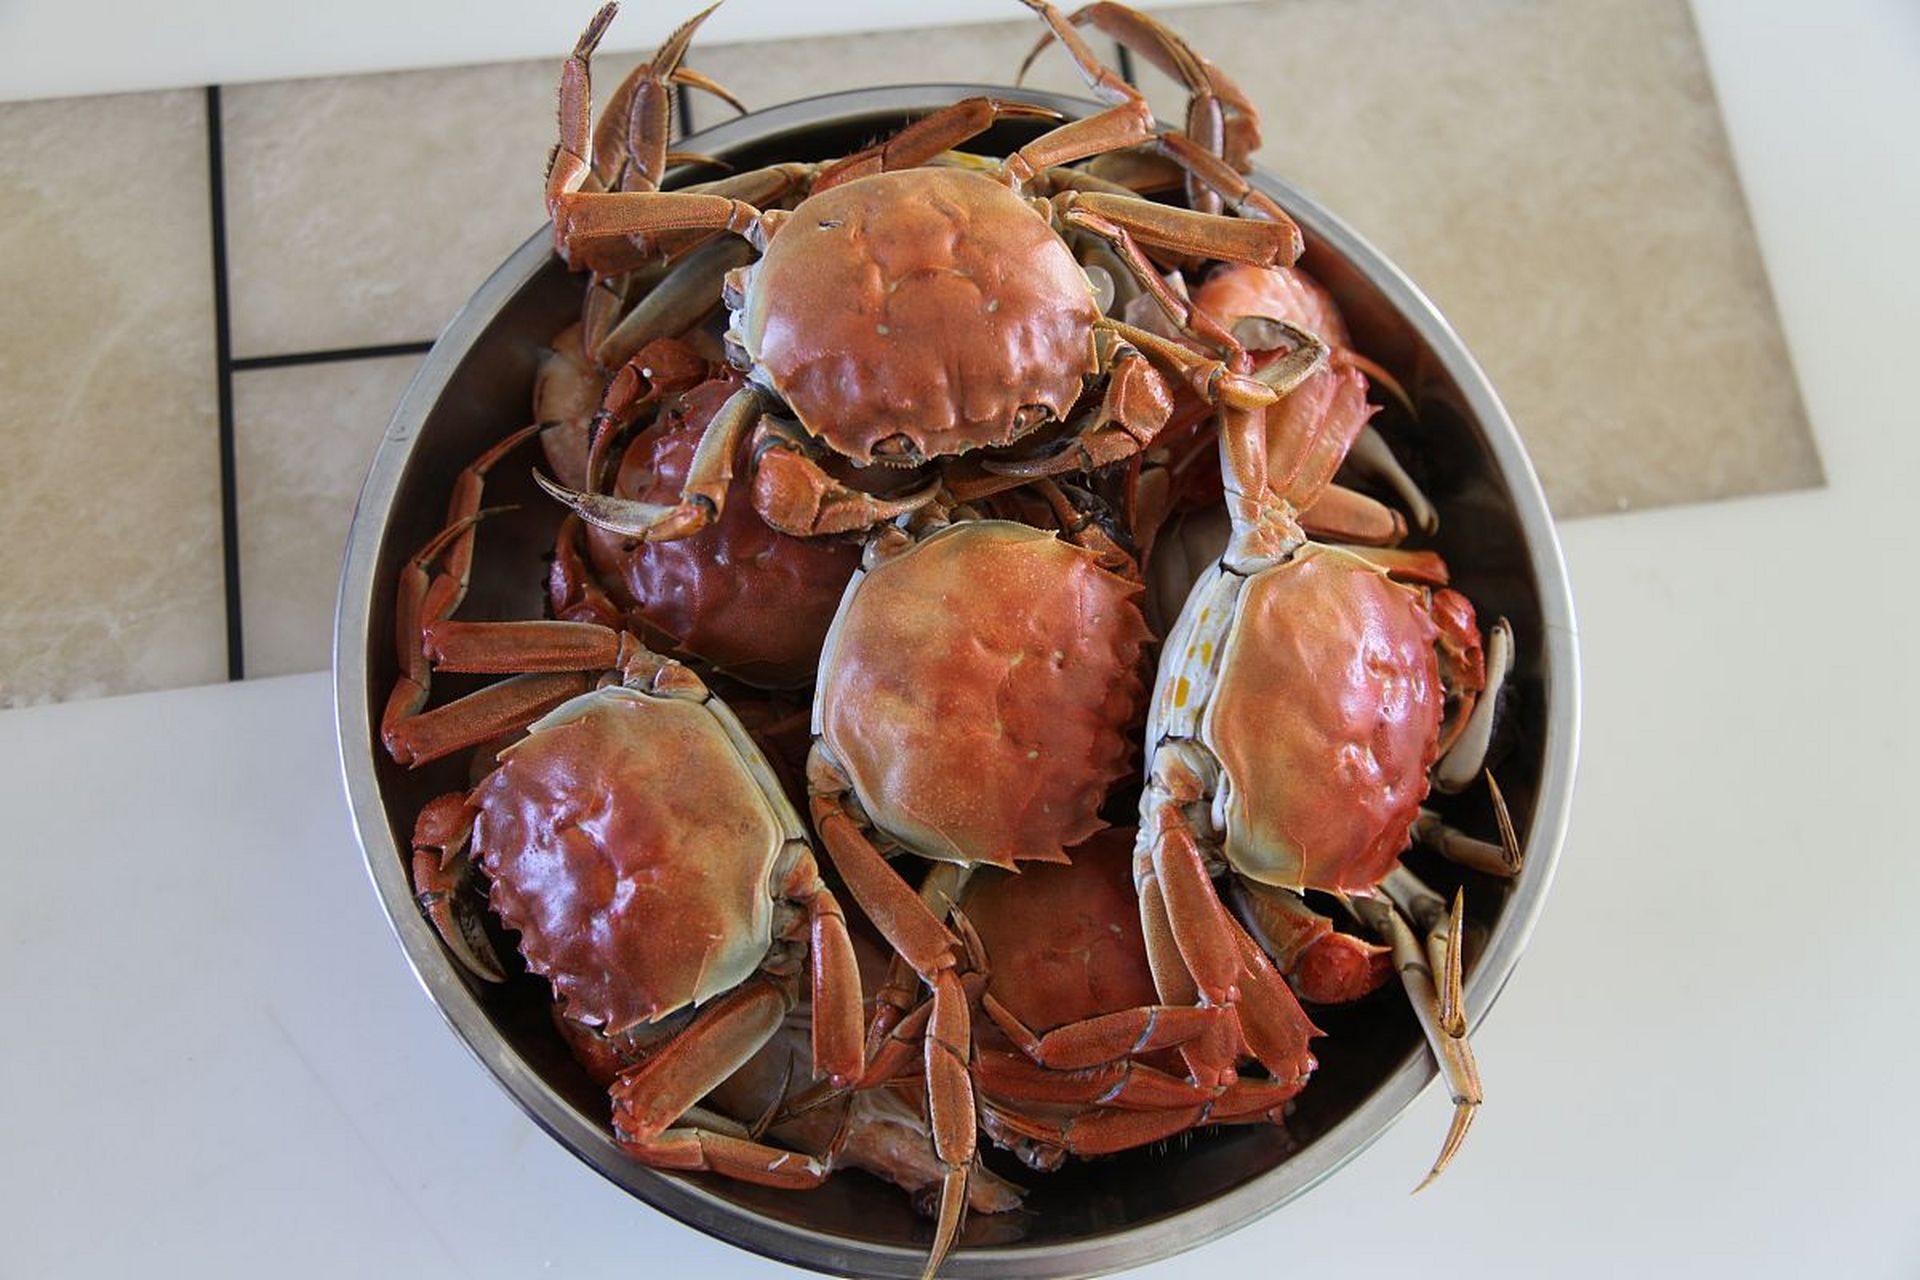 宁河醉蟹是中国宁河地区的一道特色美食,以其独特的口感和美味而闻名